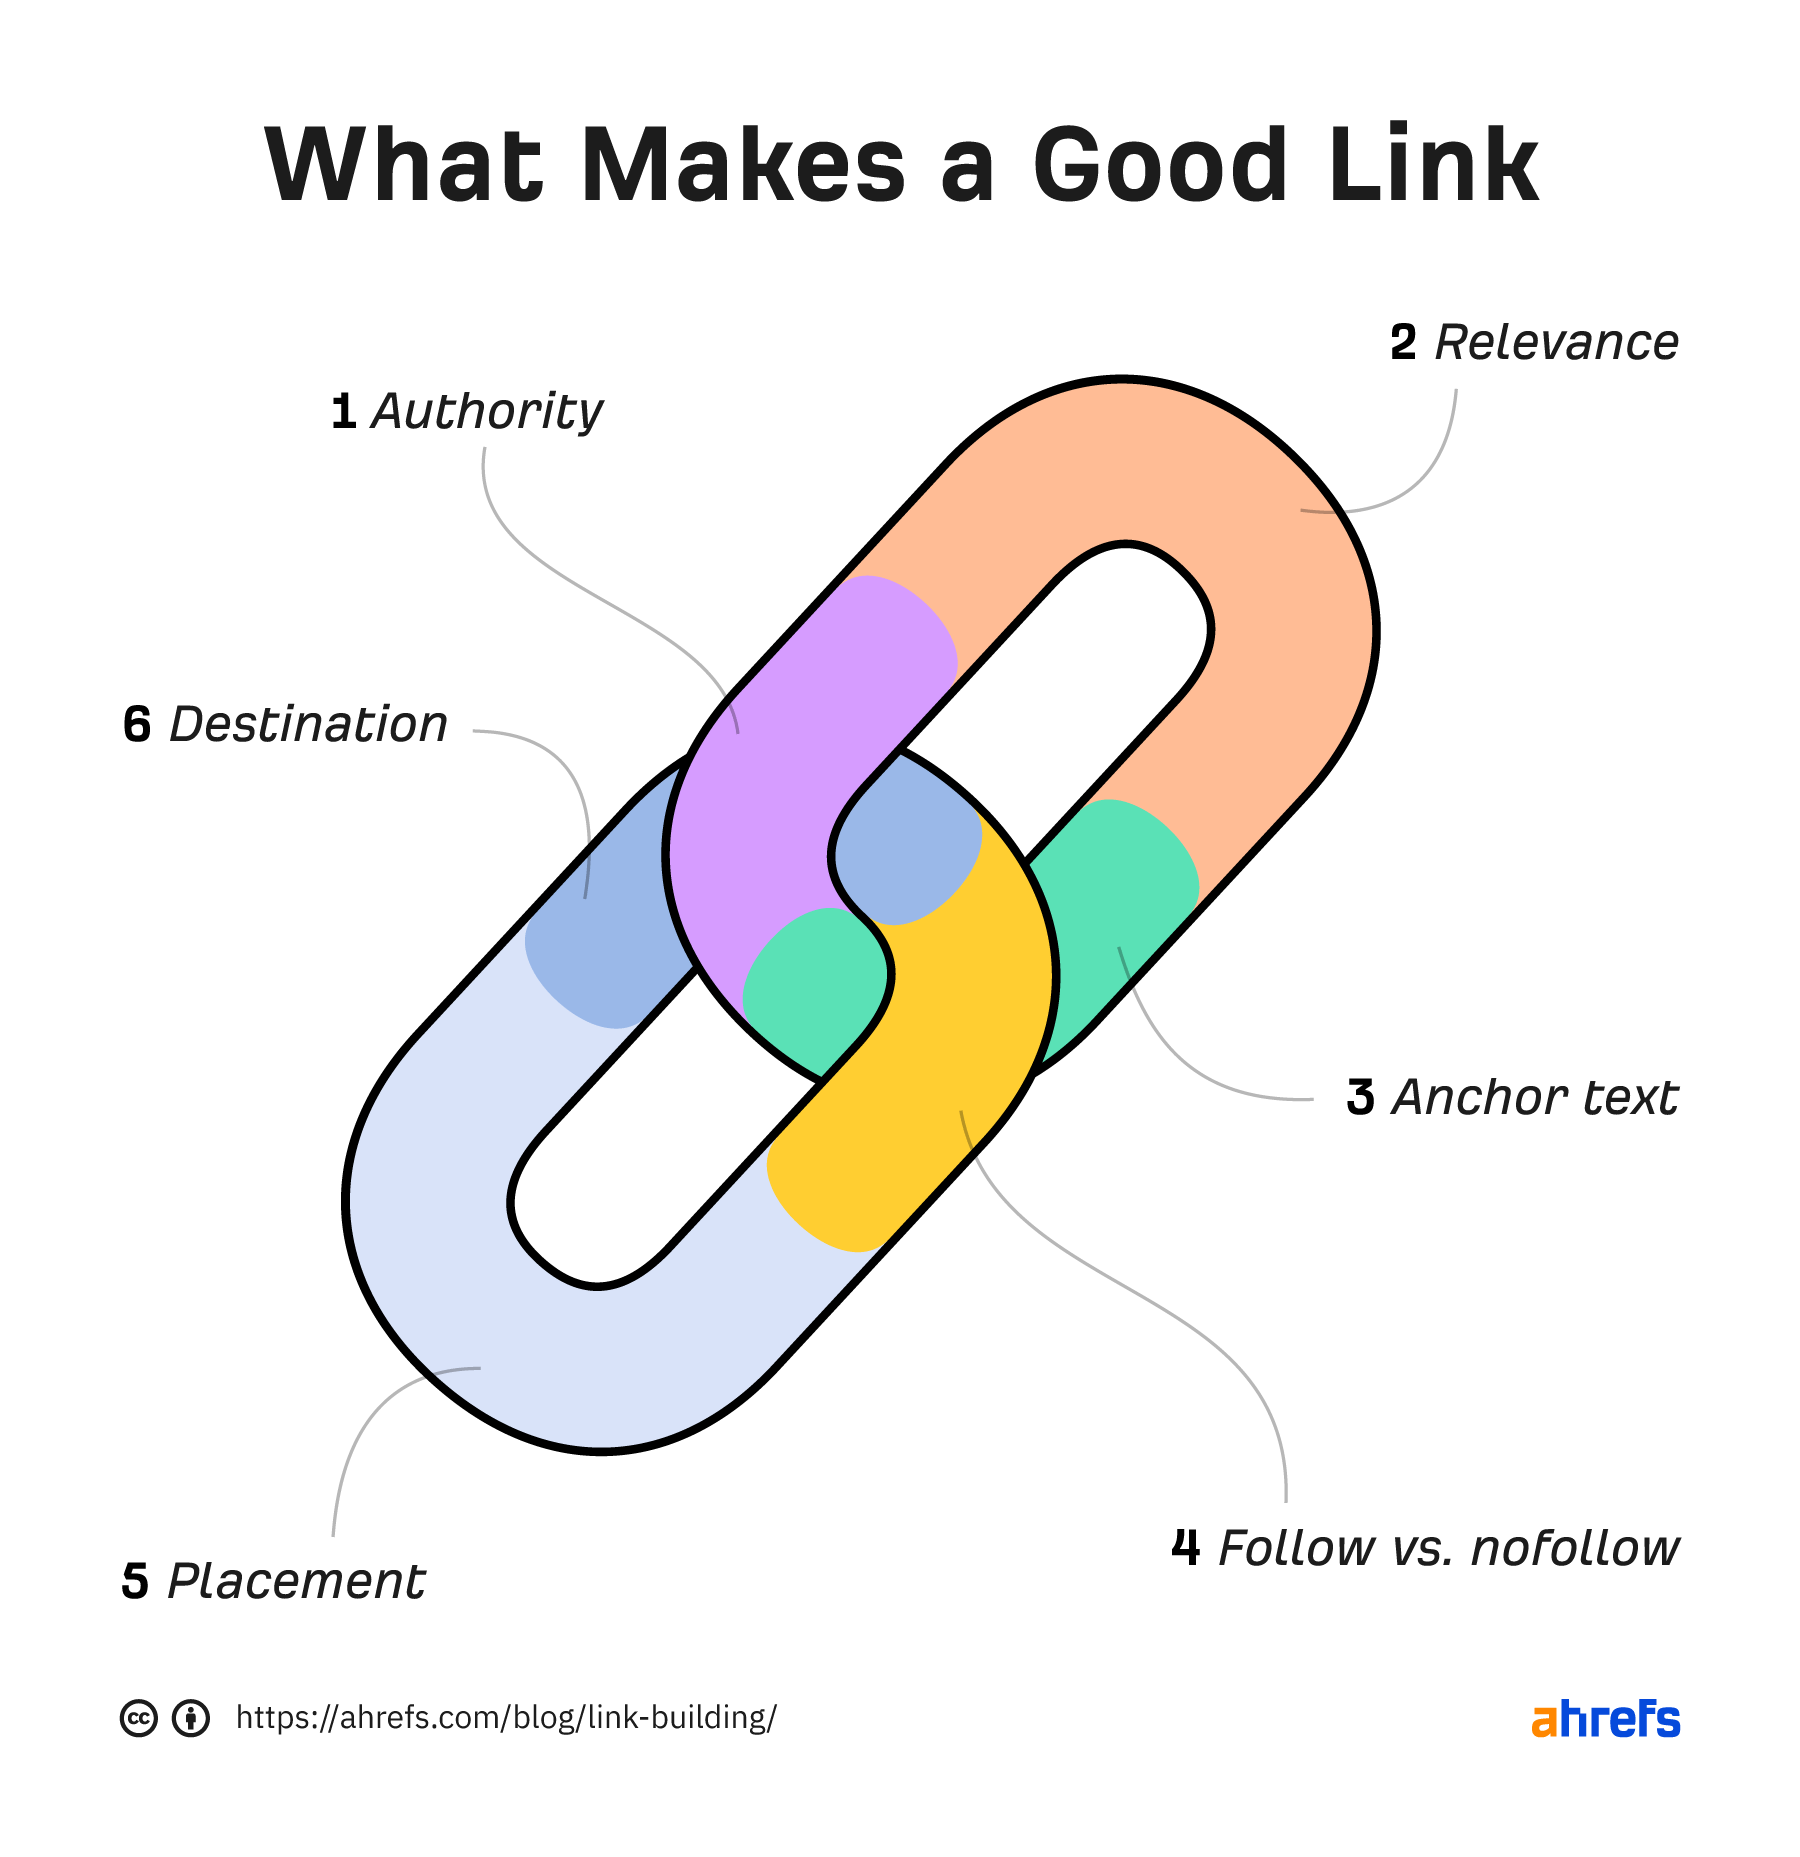 Six traits of a good link